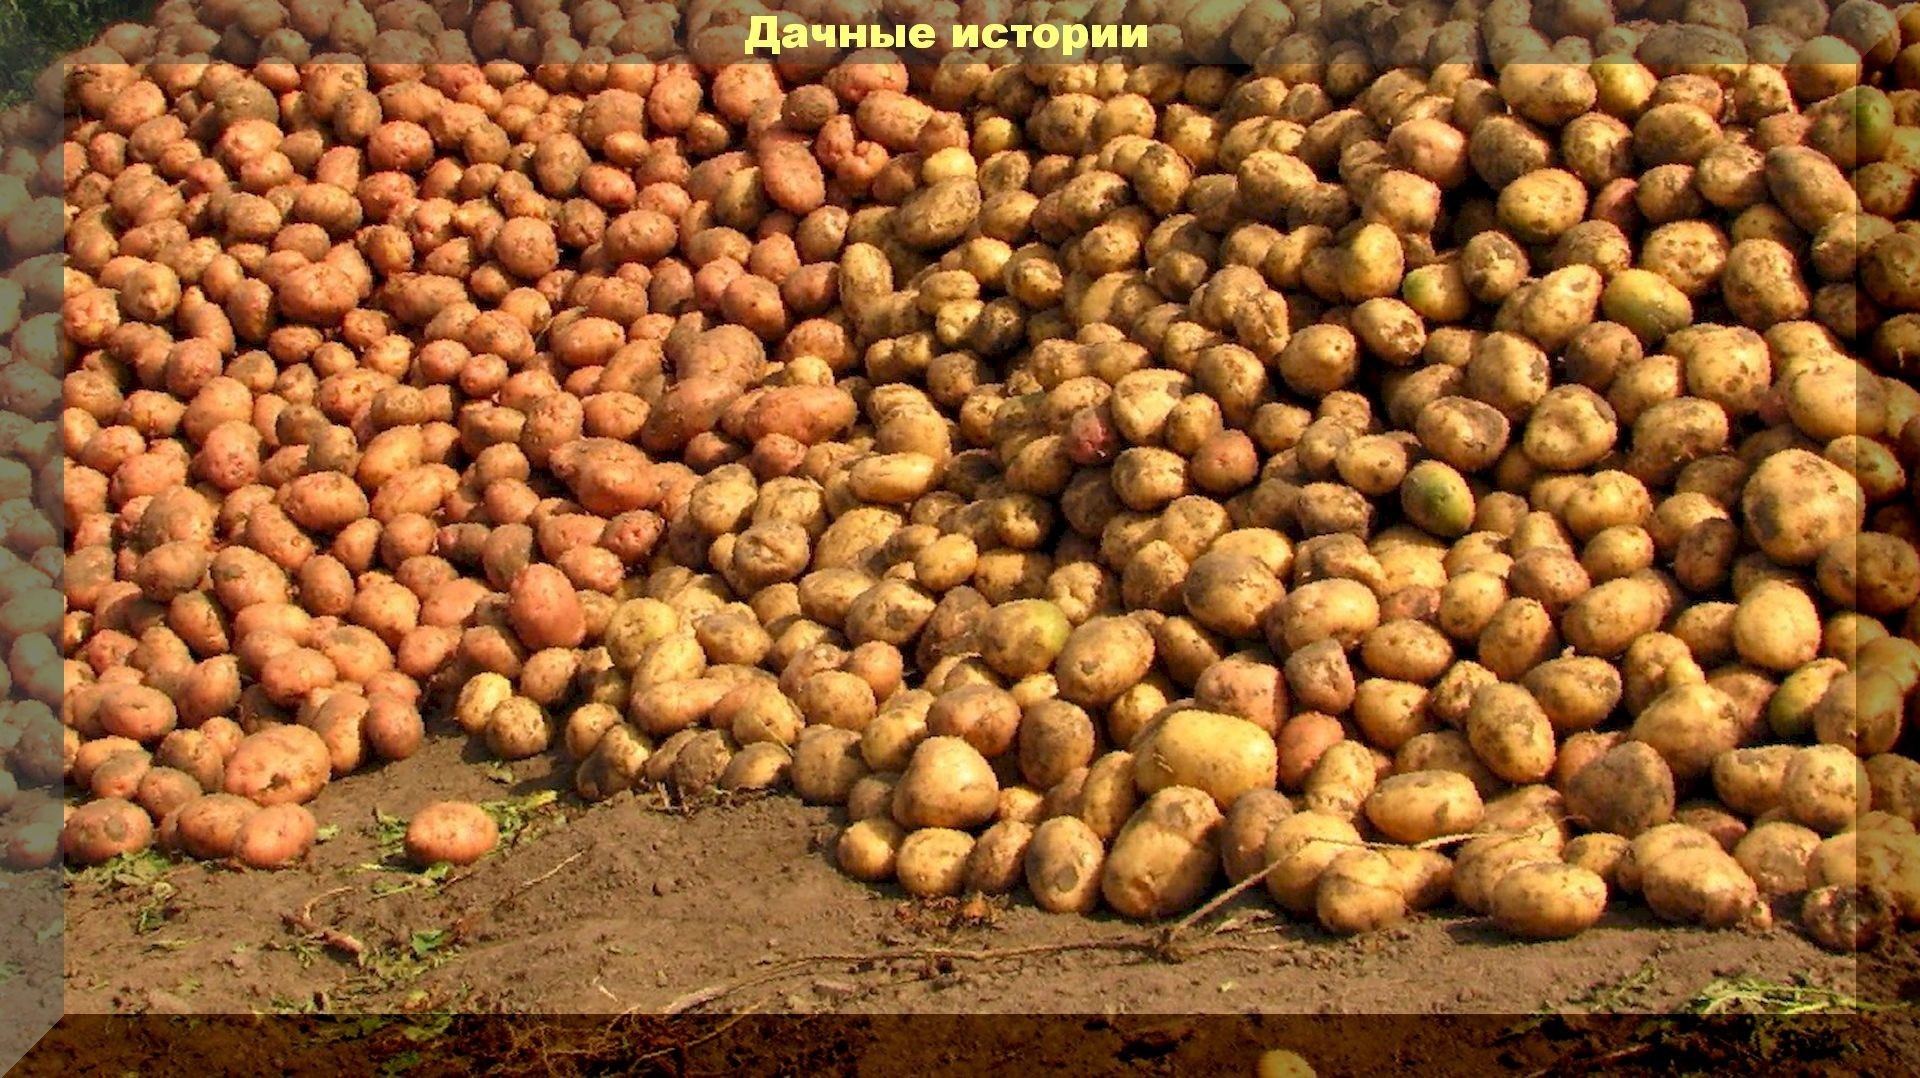 300 килограмм картофеля с сотки: простейший способ увеличить урожай